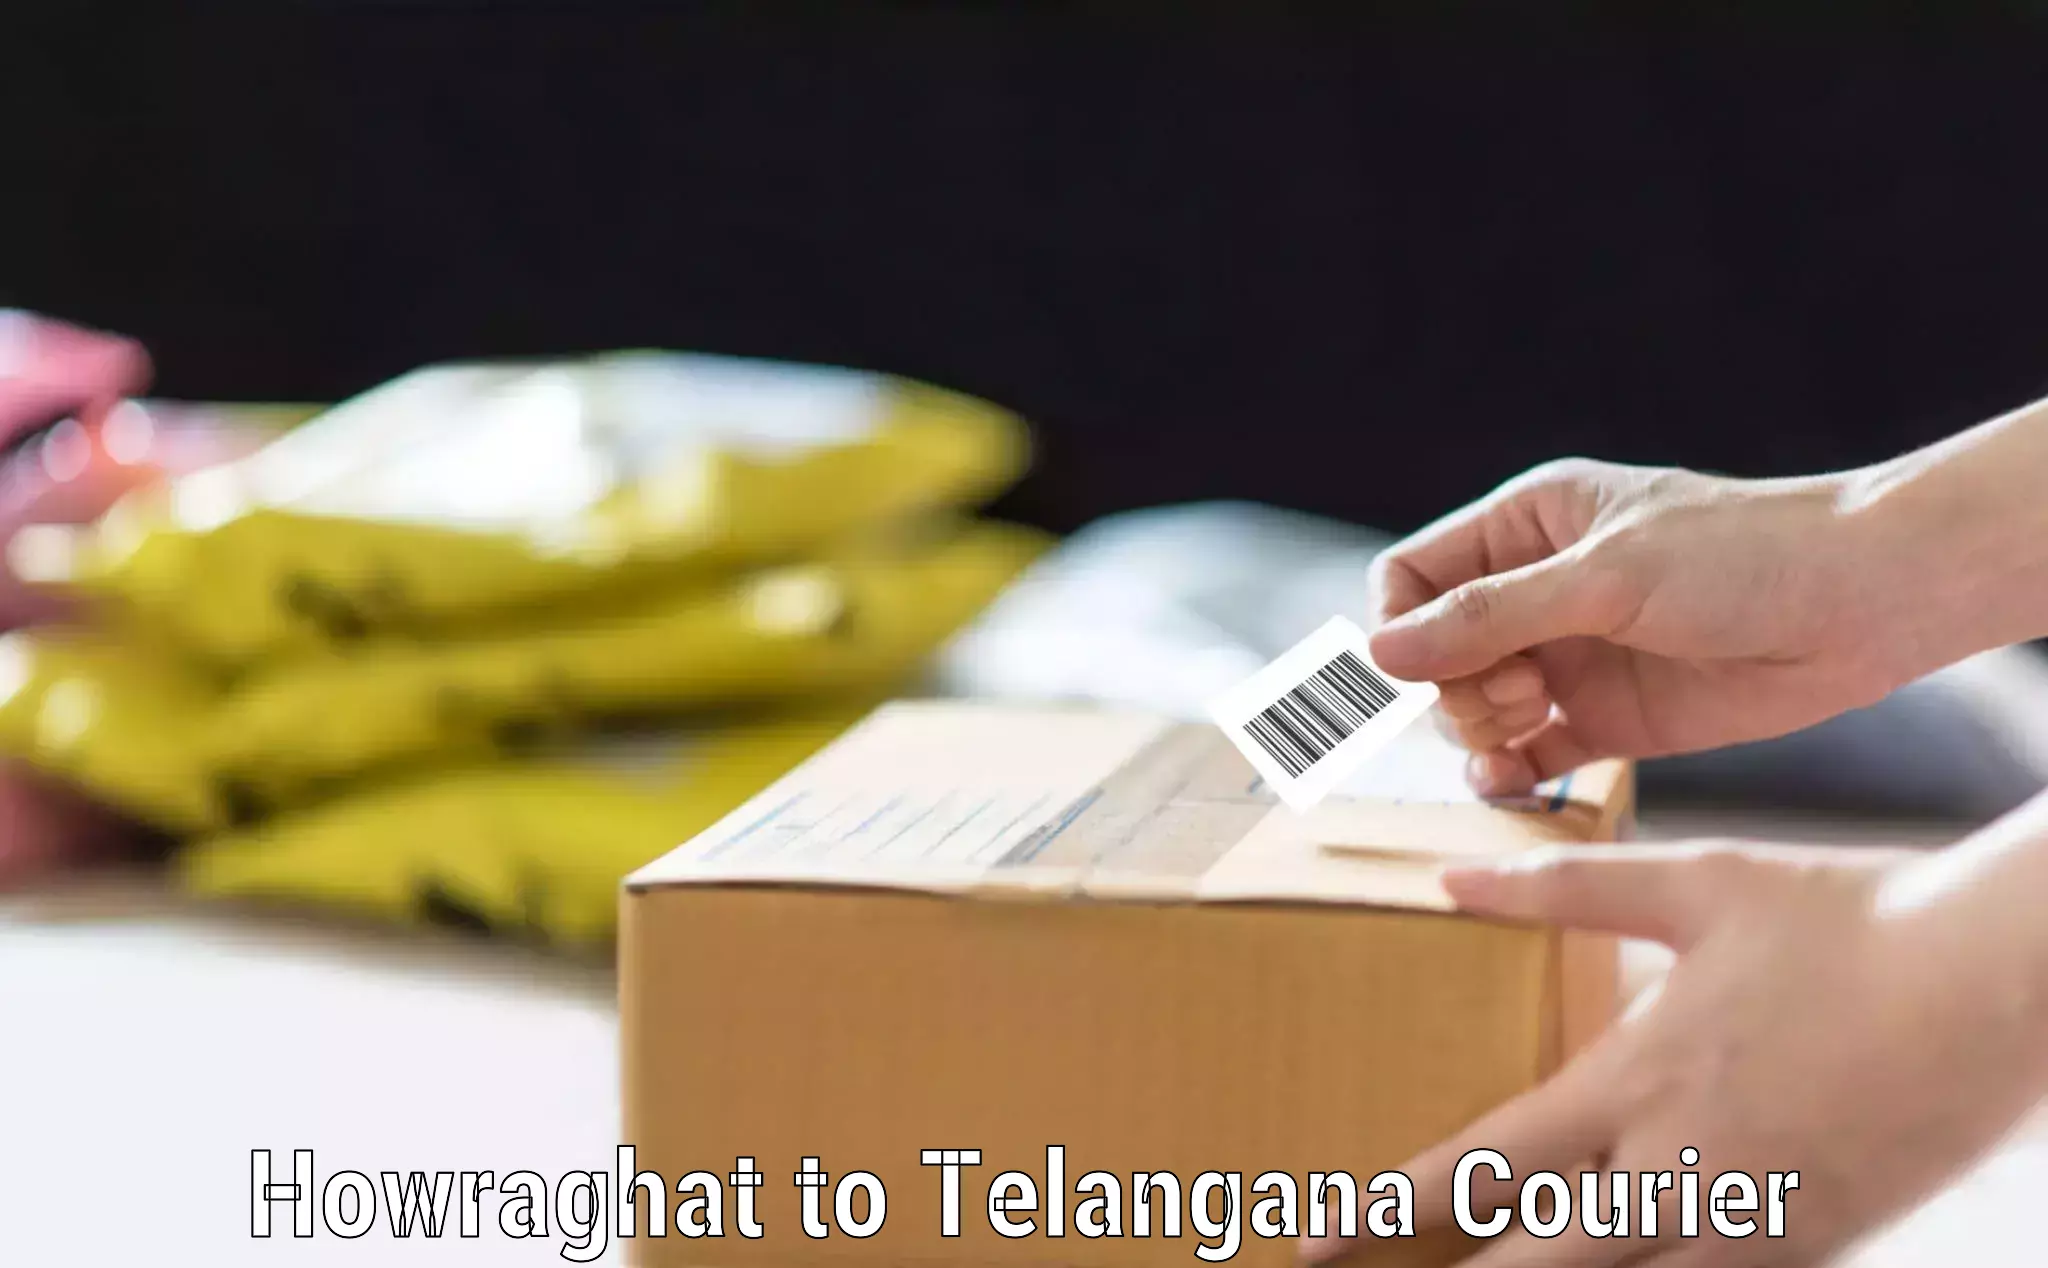 Urgent luggage shipment Howraghat to Gangadhara